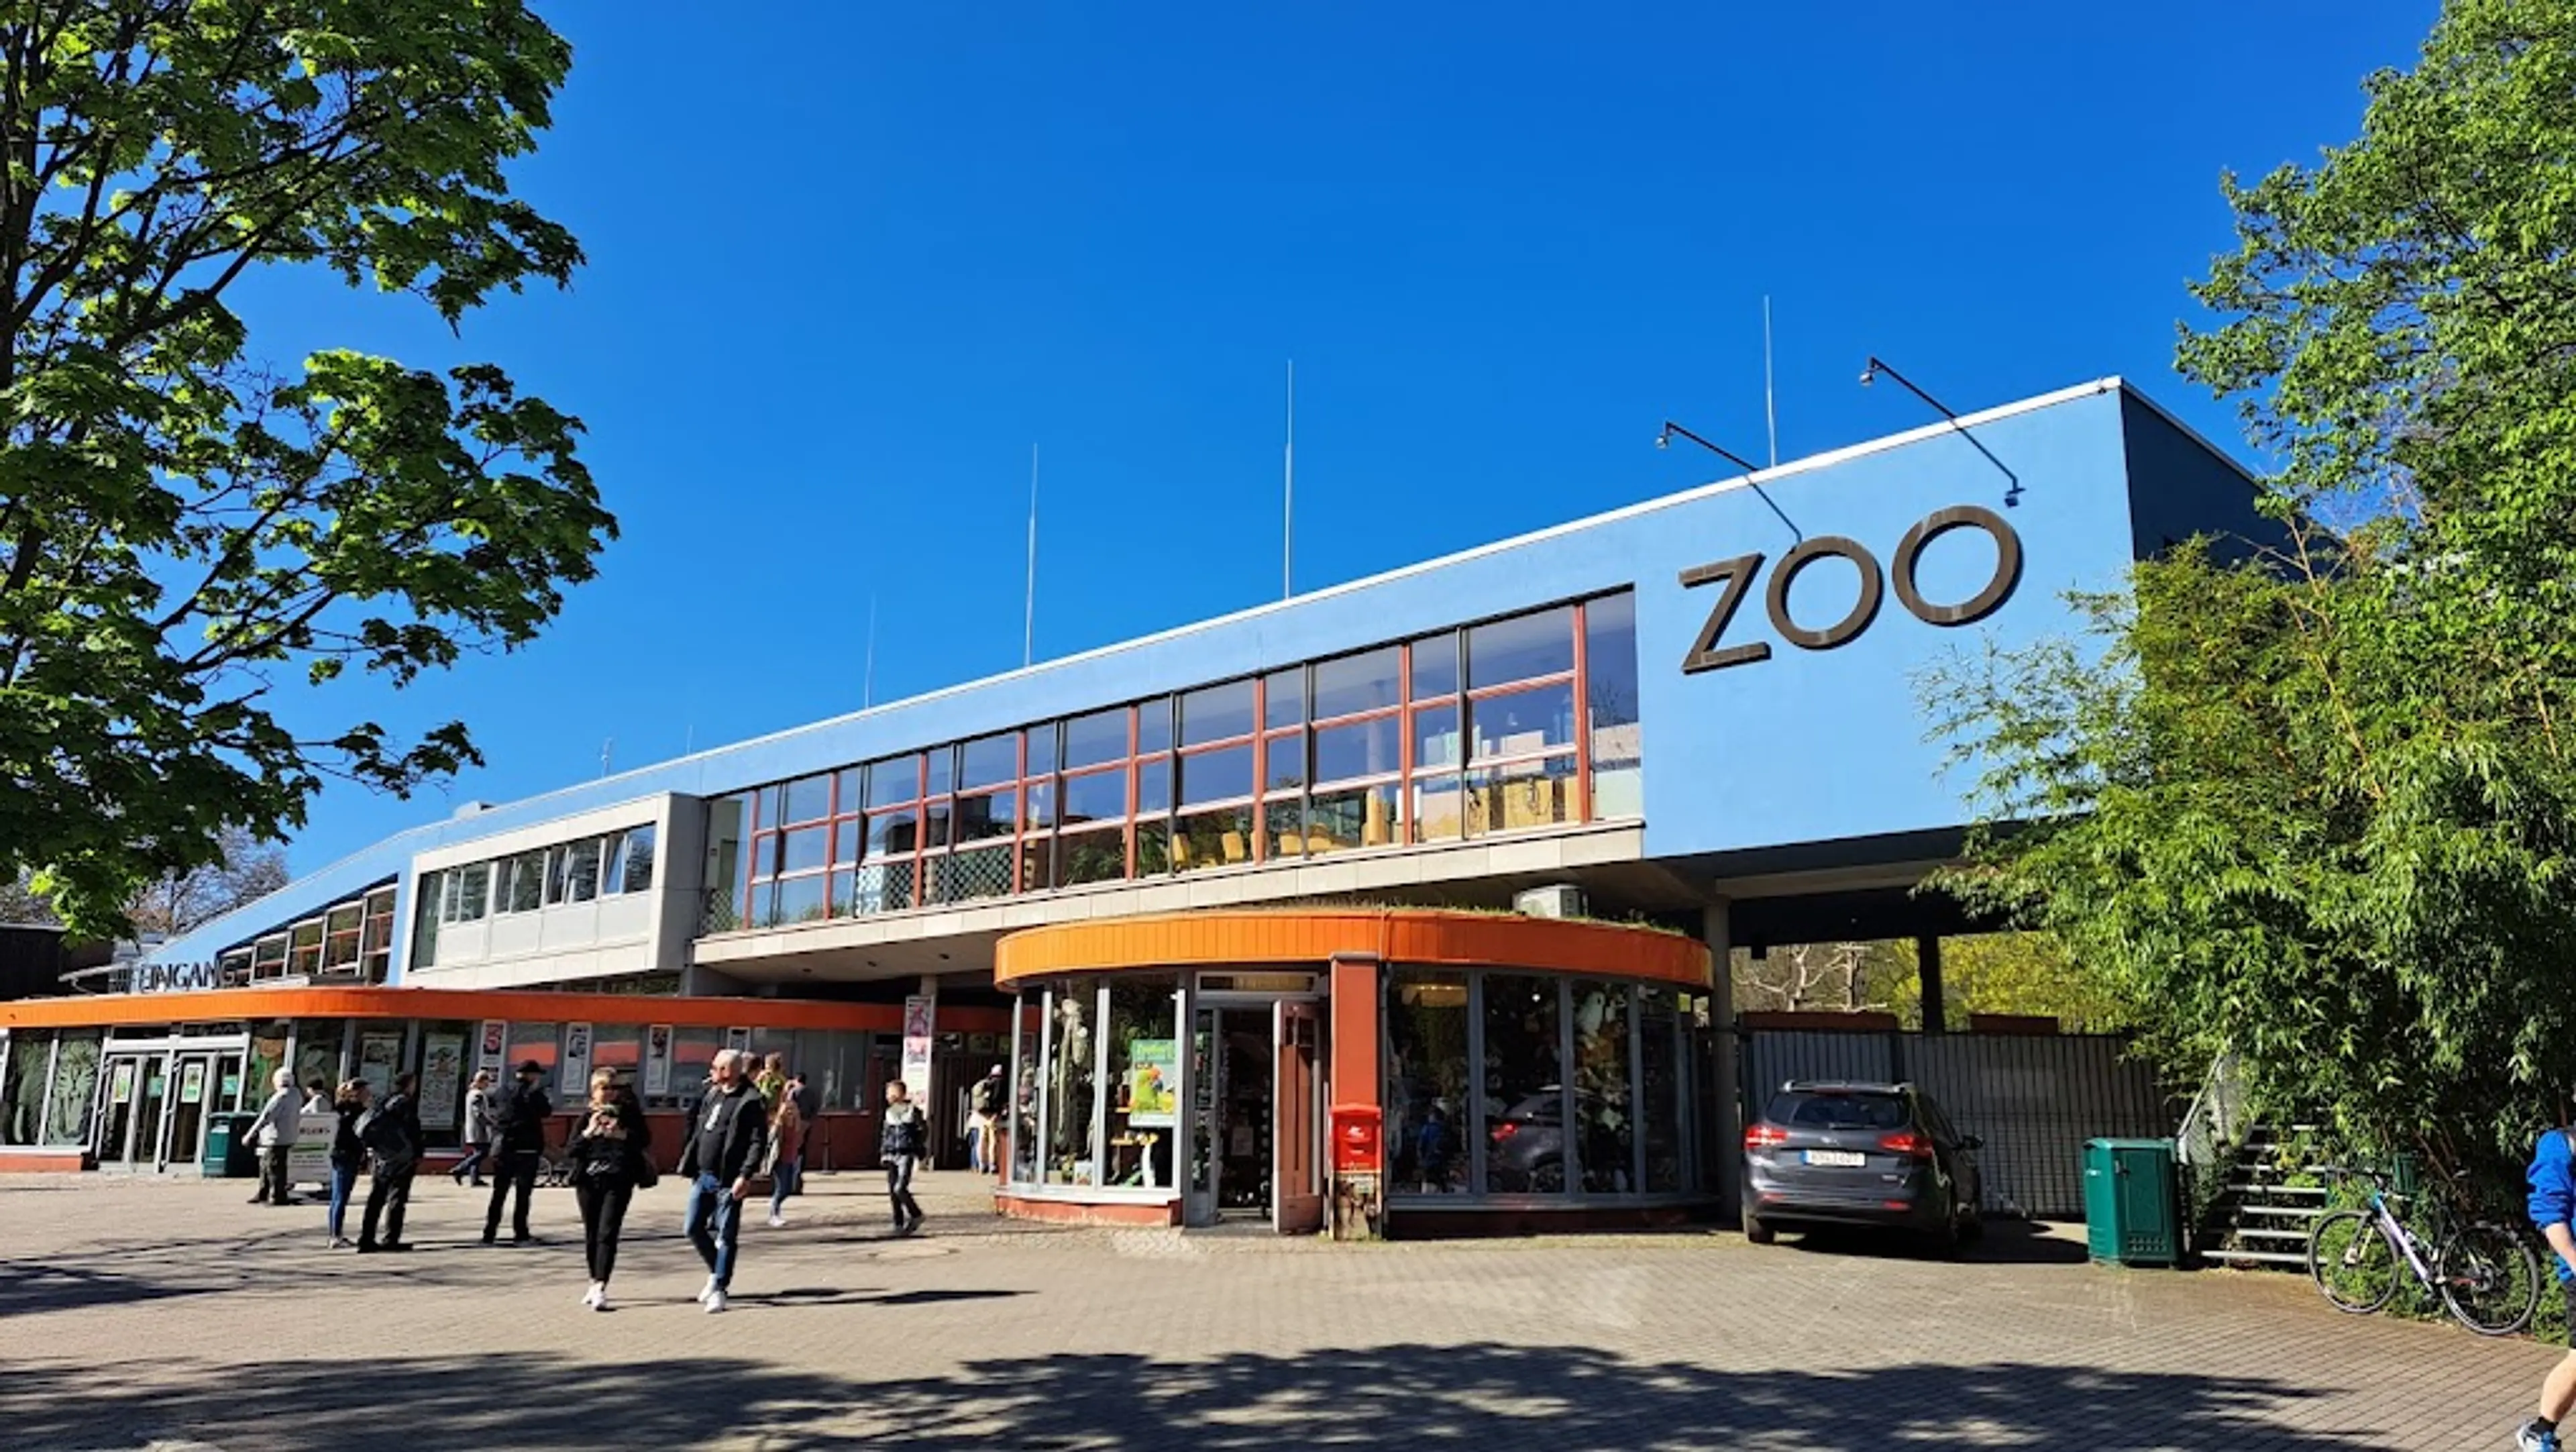 Dresden Zoo